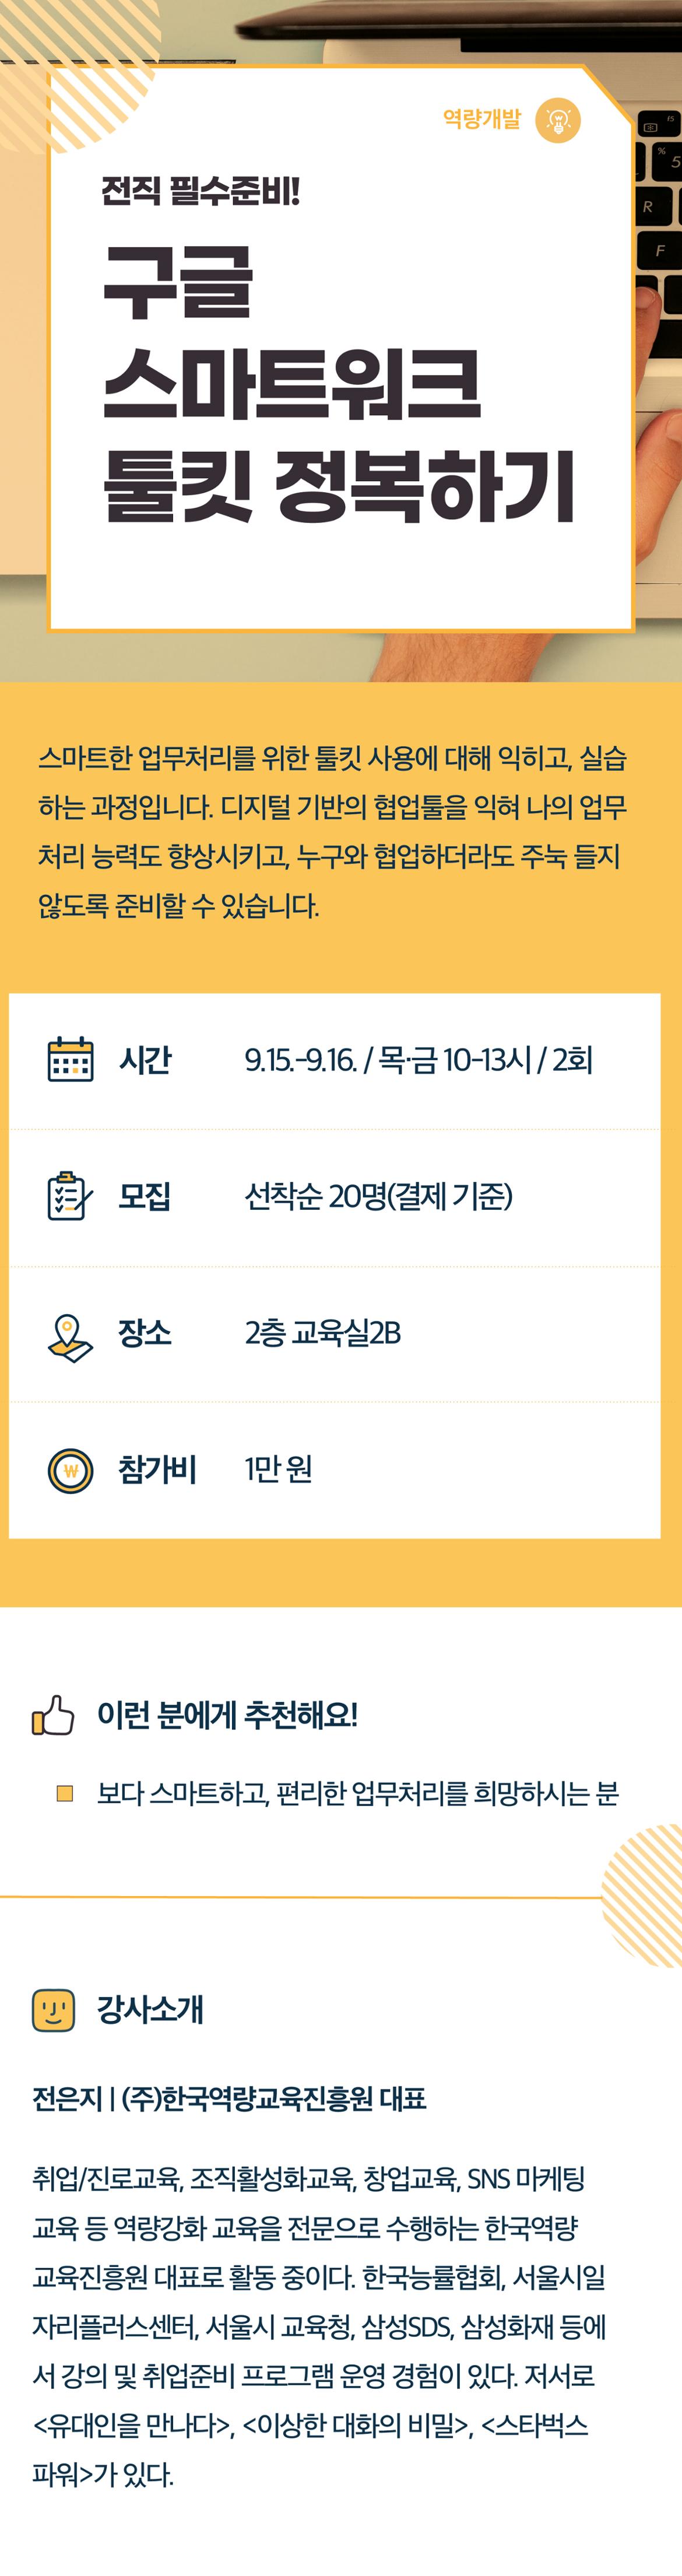 2022서부캠하반기_역량개발05_구글스마트워크(0721수정).jpg